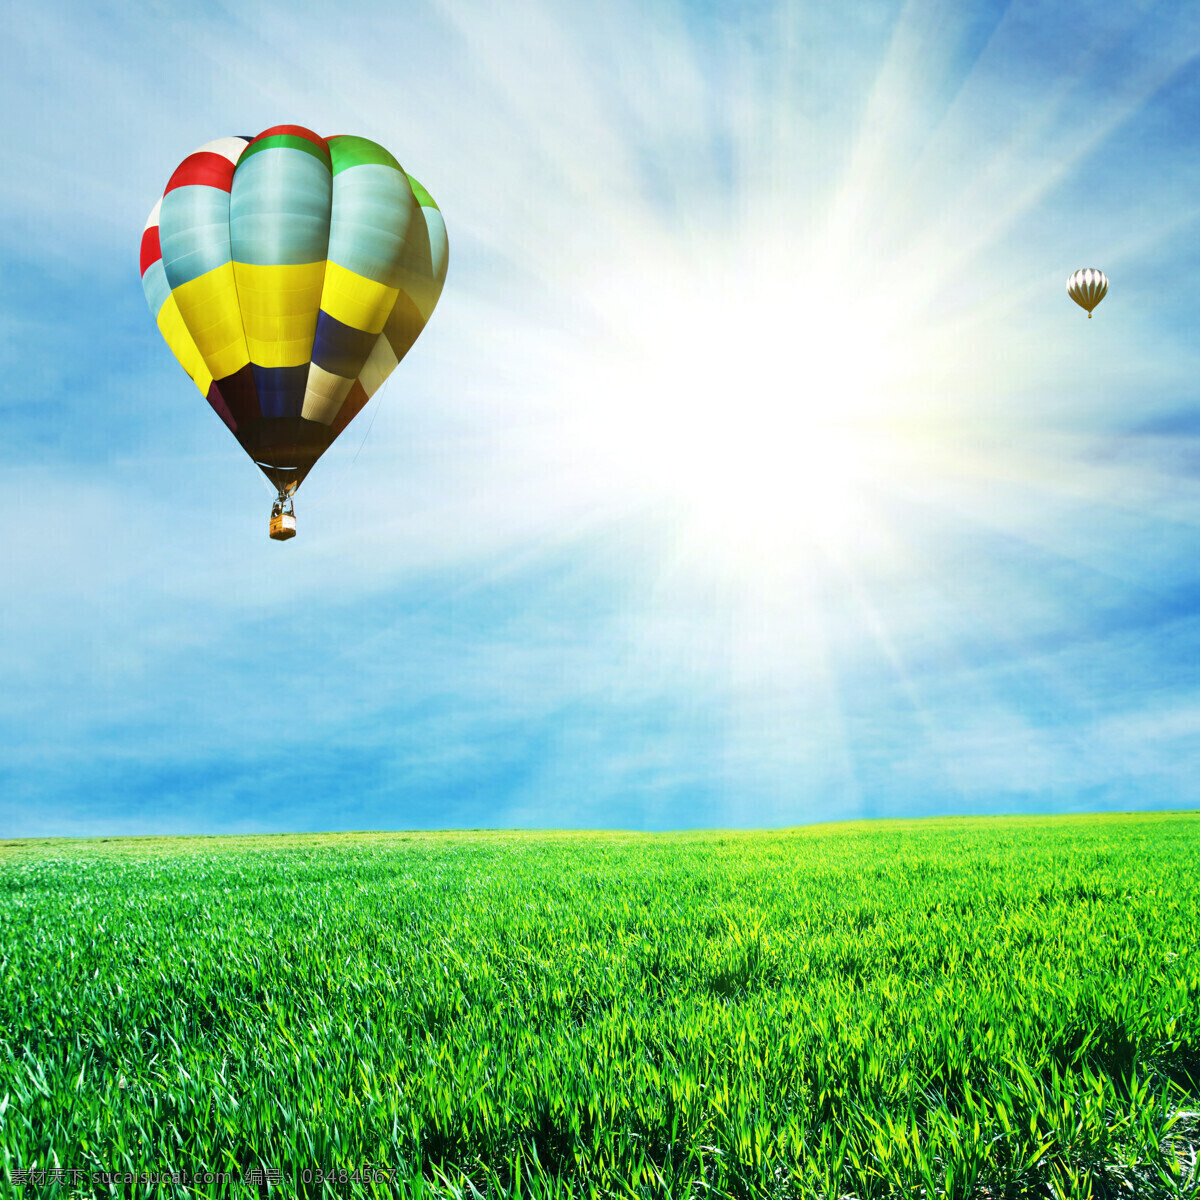 阳光 下 草地 上 热气球 蓝天 白云 太阳 草坪 人物 其他类别 山水风景 风景图片